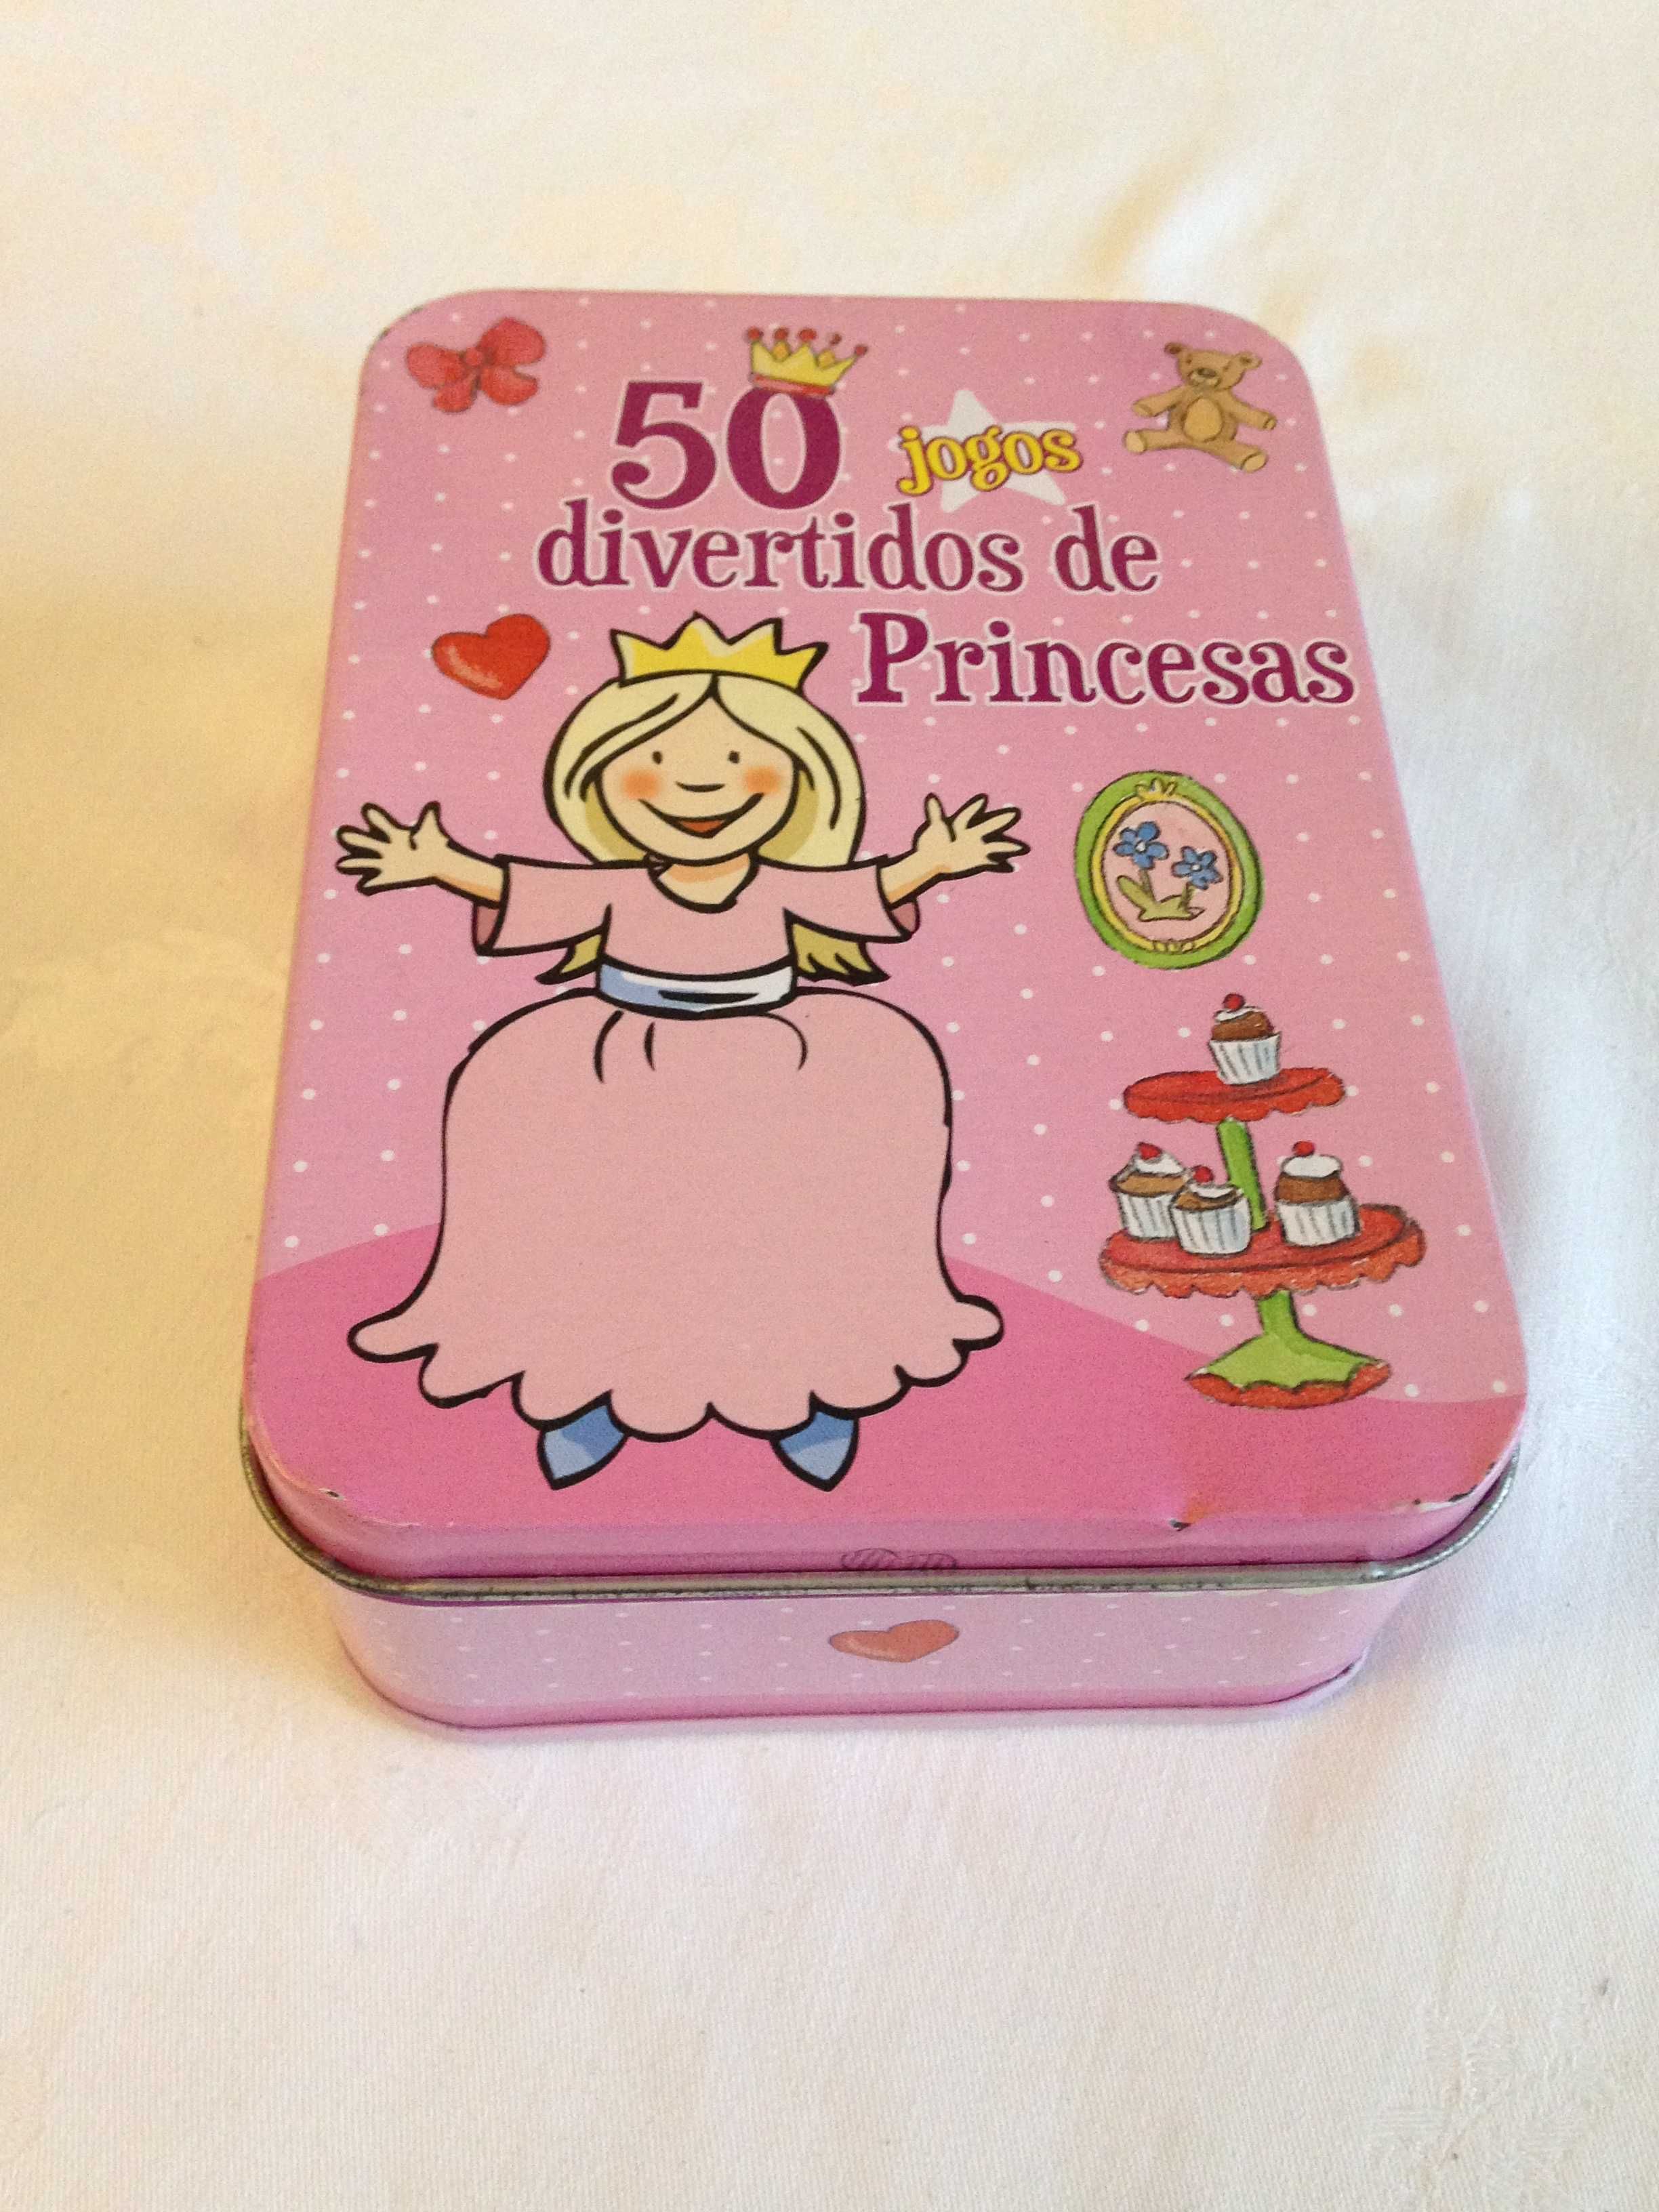 50 jogos divertidos de Princesas